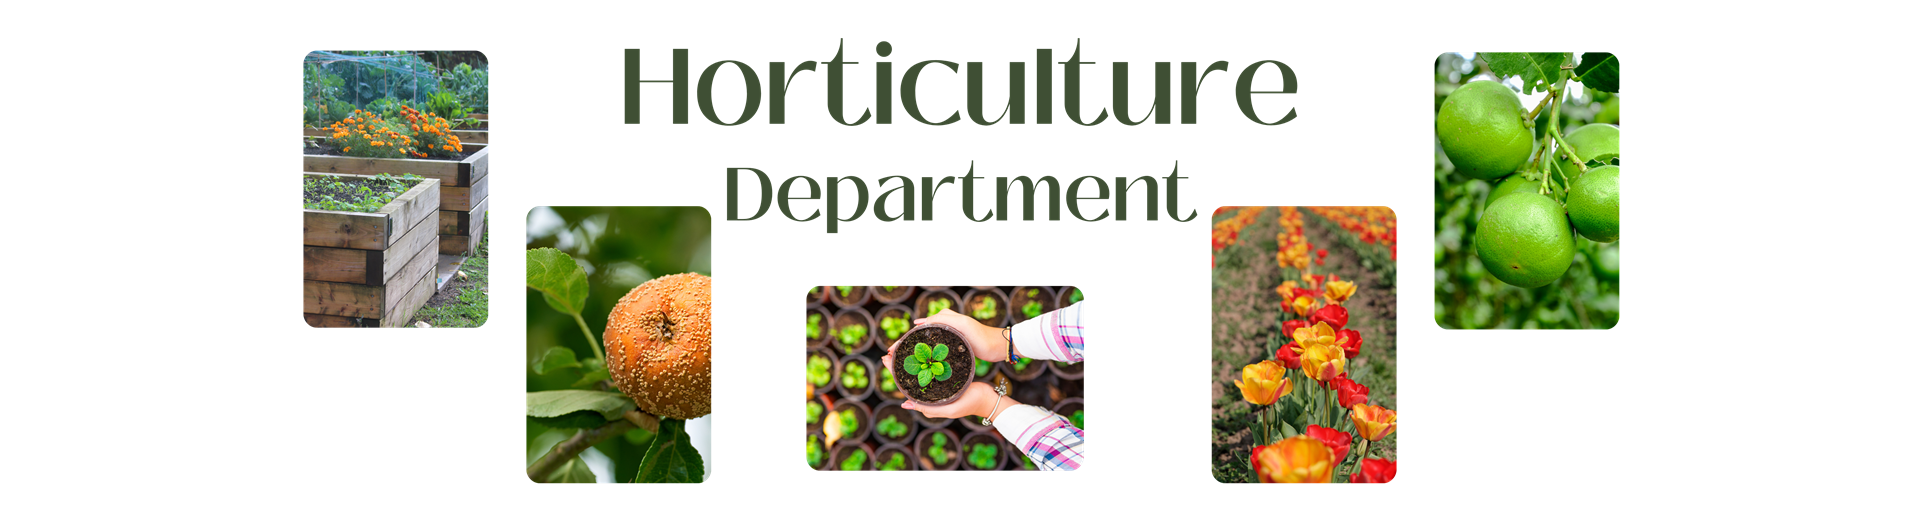 Horticulture Department